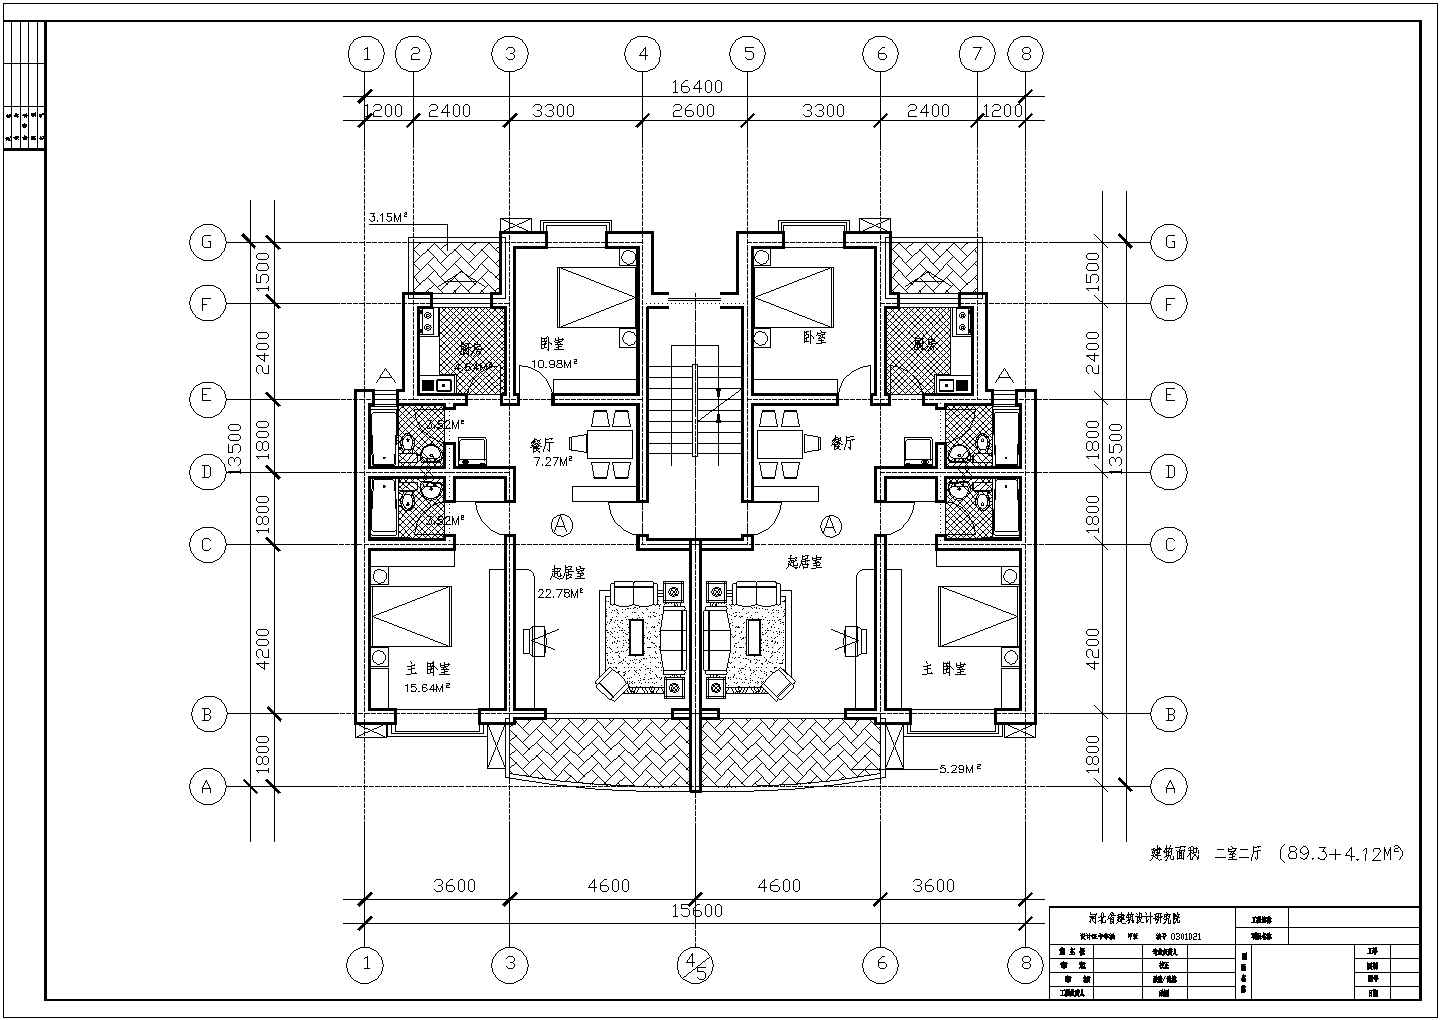 94平方米小高层一梯两户住宅户型设计cad图(含效果图)